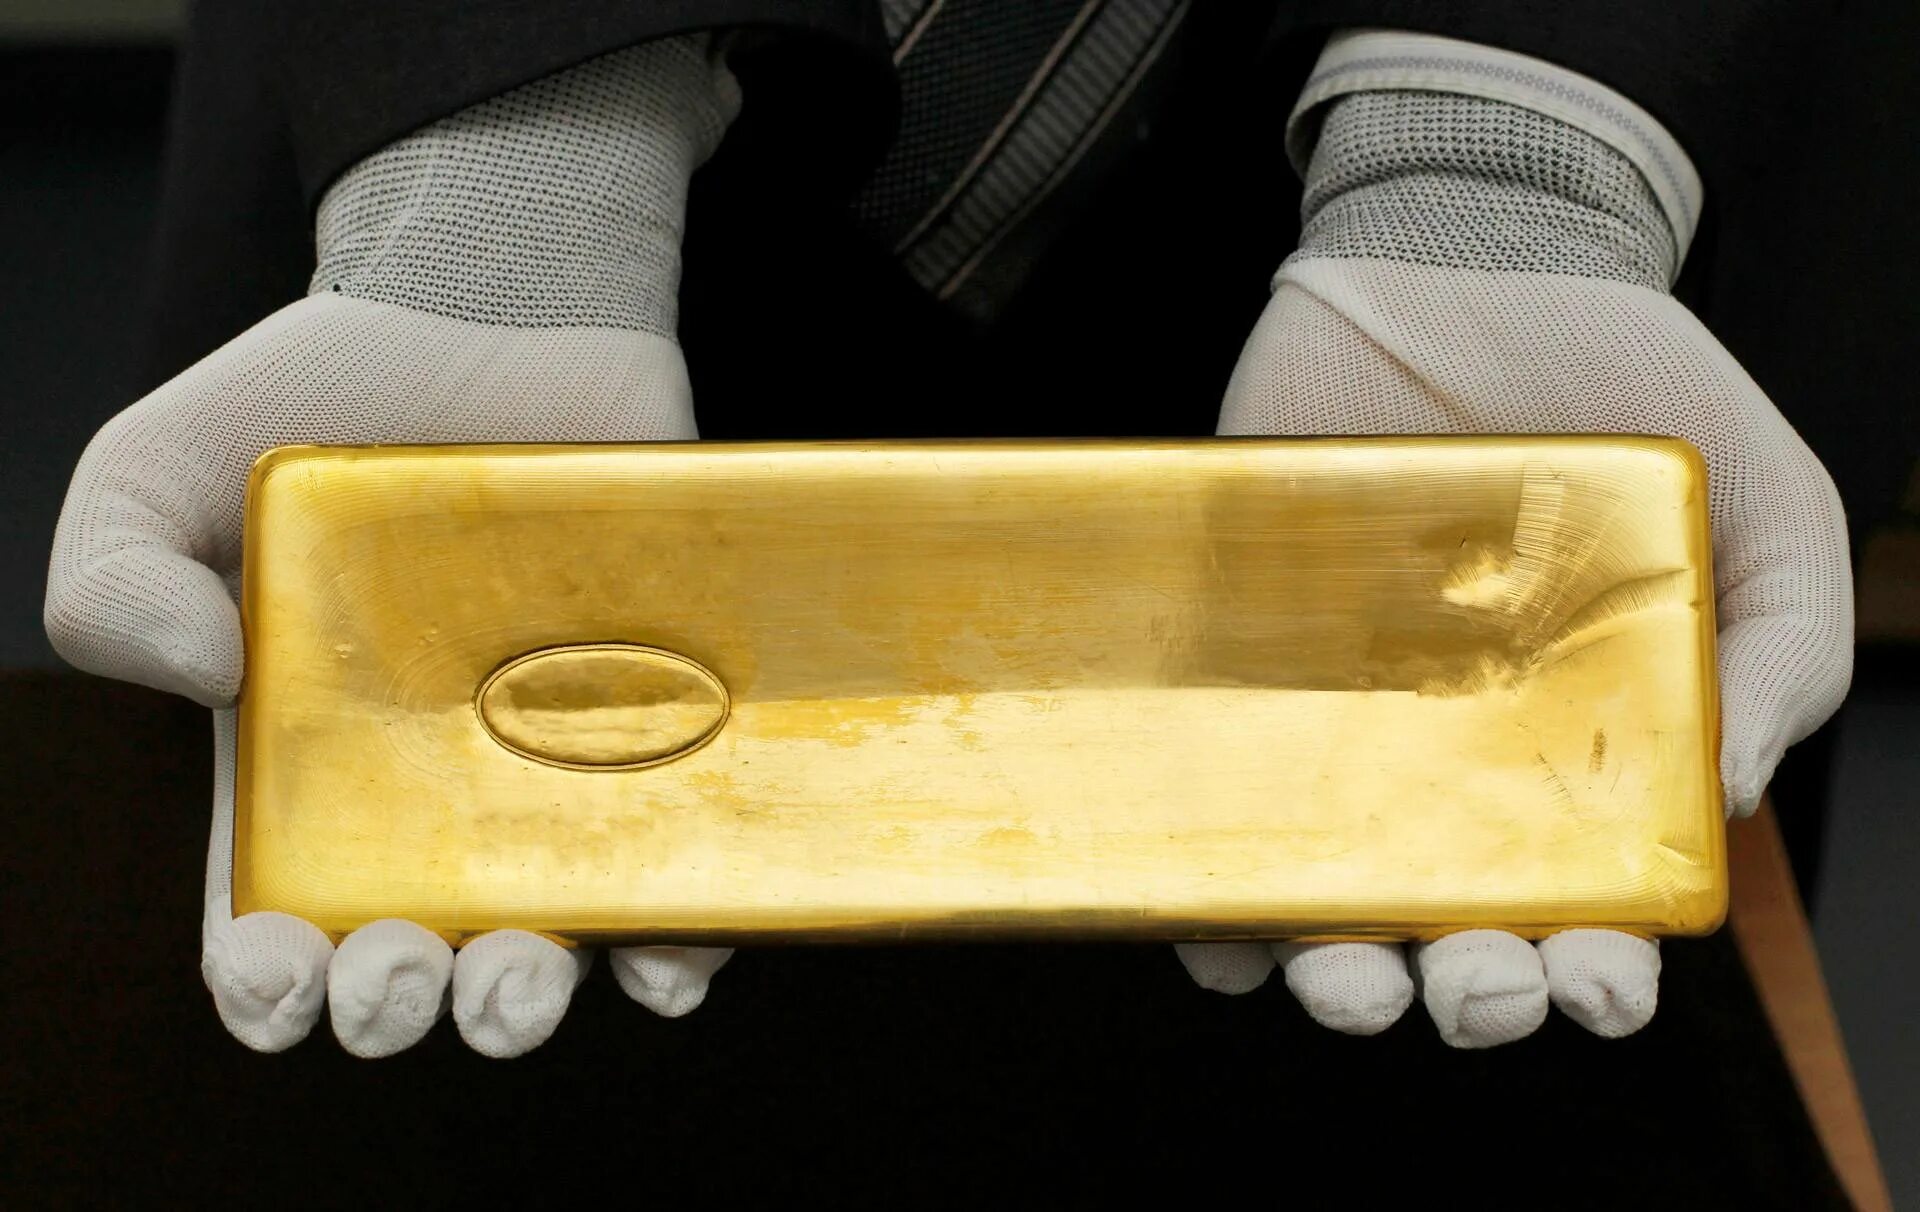 Масса слитка золота 999 пробы. Вес стандартного слитка золота 999 пробы. Слиток золота 16 кг. Золото 1 кг слиток России.